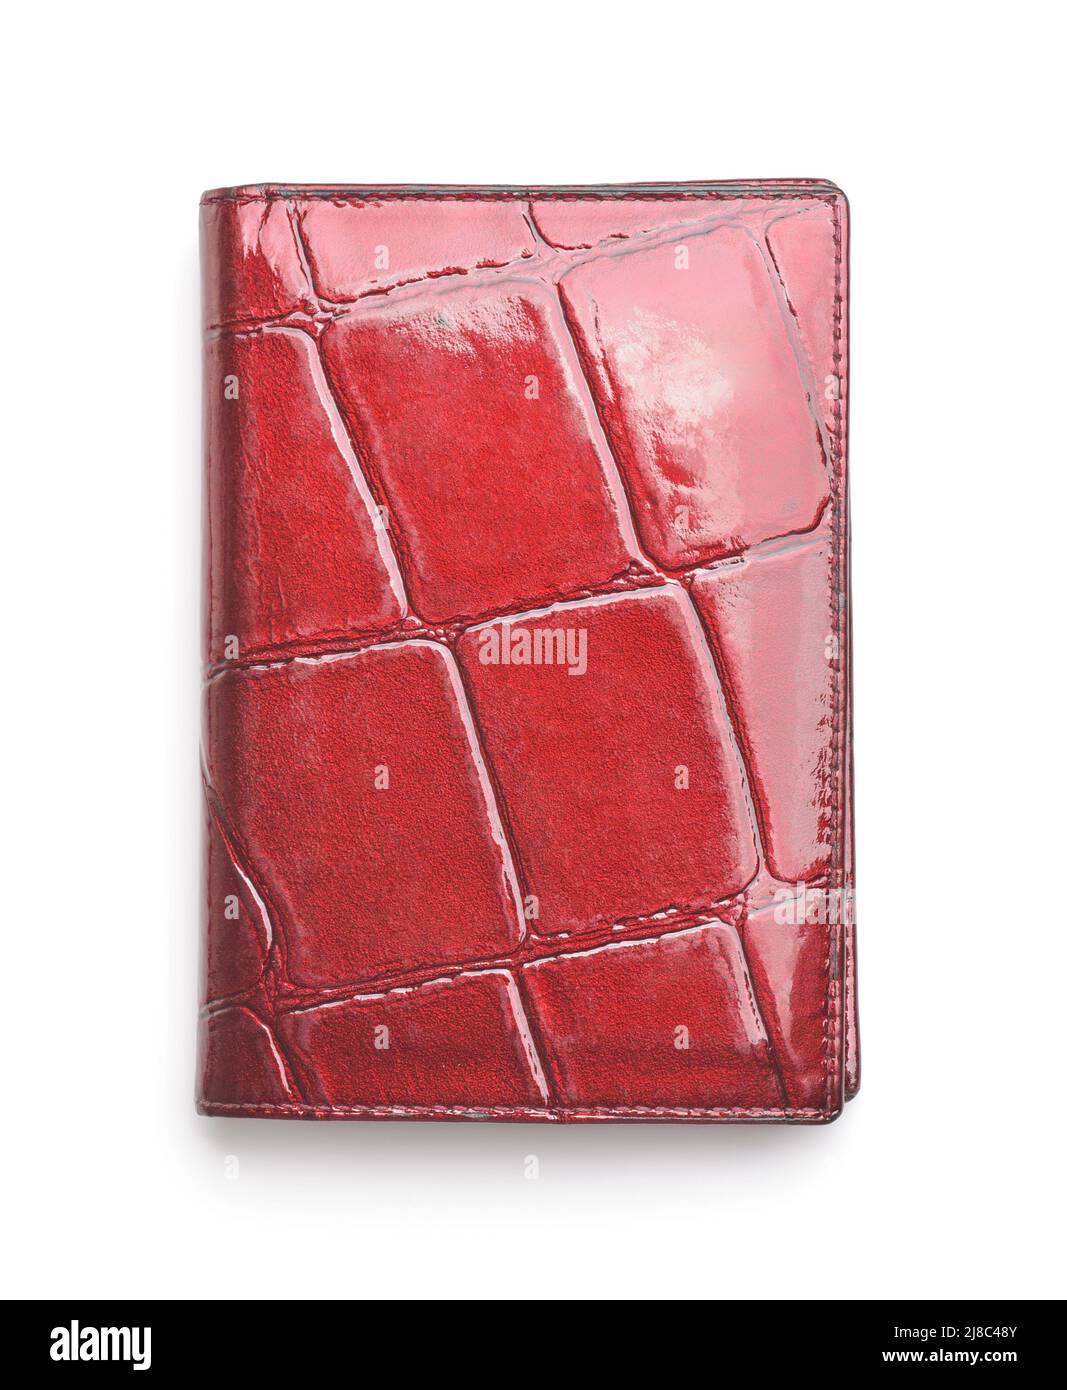 Vista frontal del soporte de la tarjeta de identificación de cuero rojo brillante aislado en blanco Foto de stock